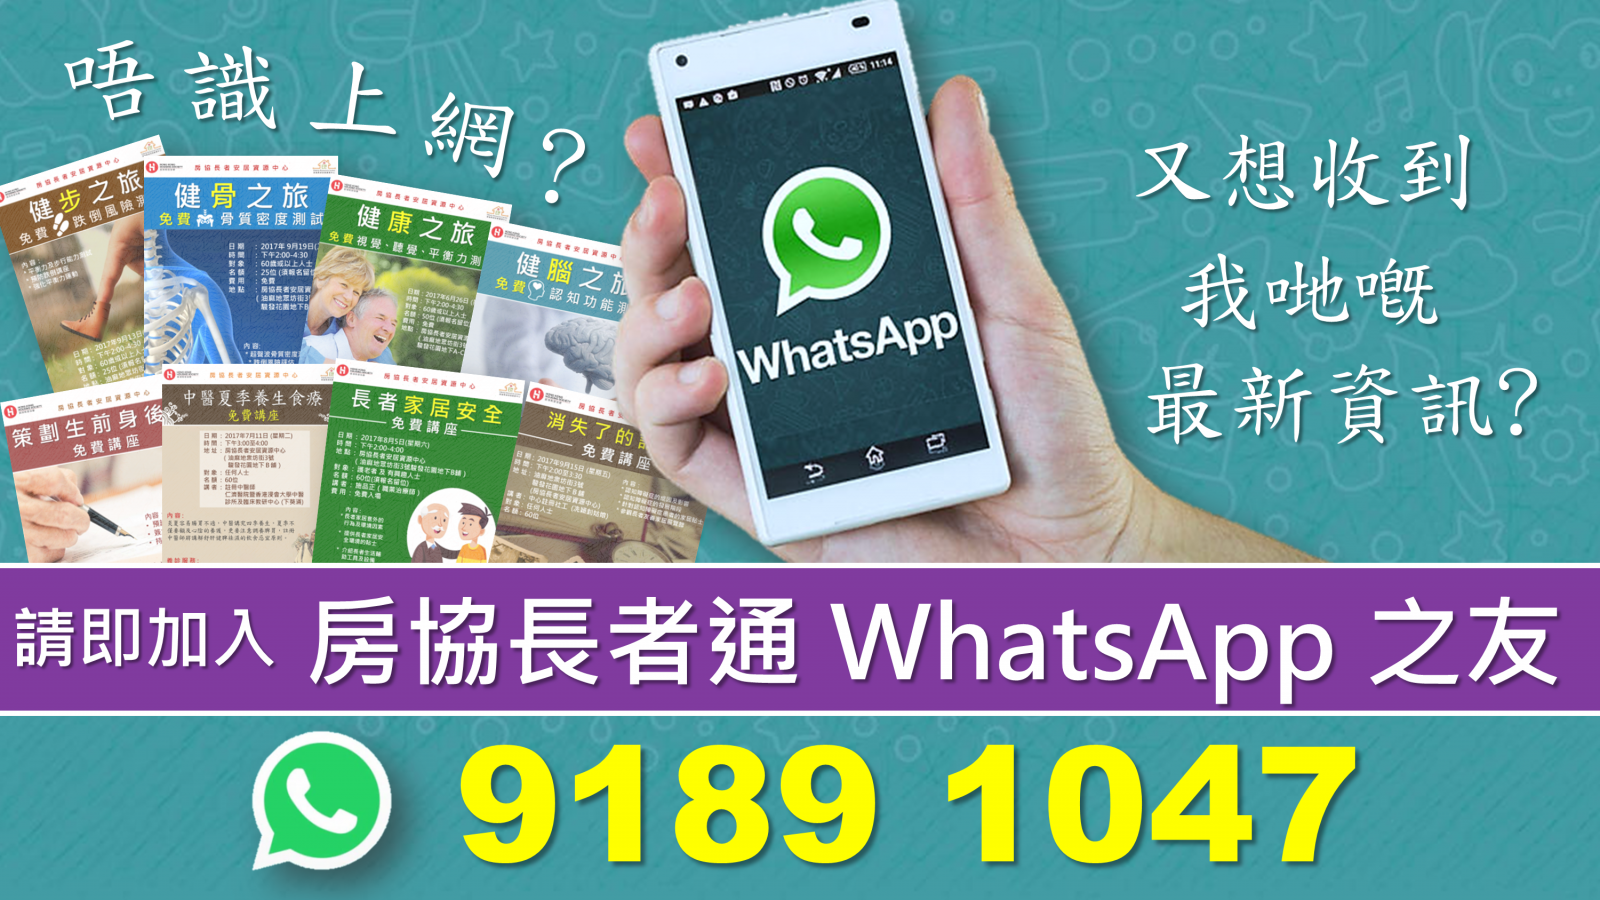 2019-03-27 中心推出 WhatsApp 廣播服務